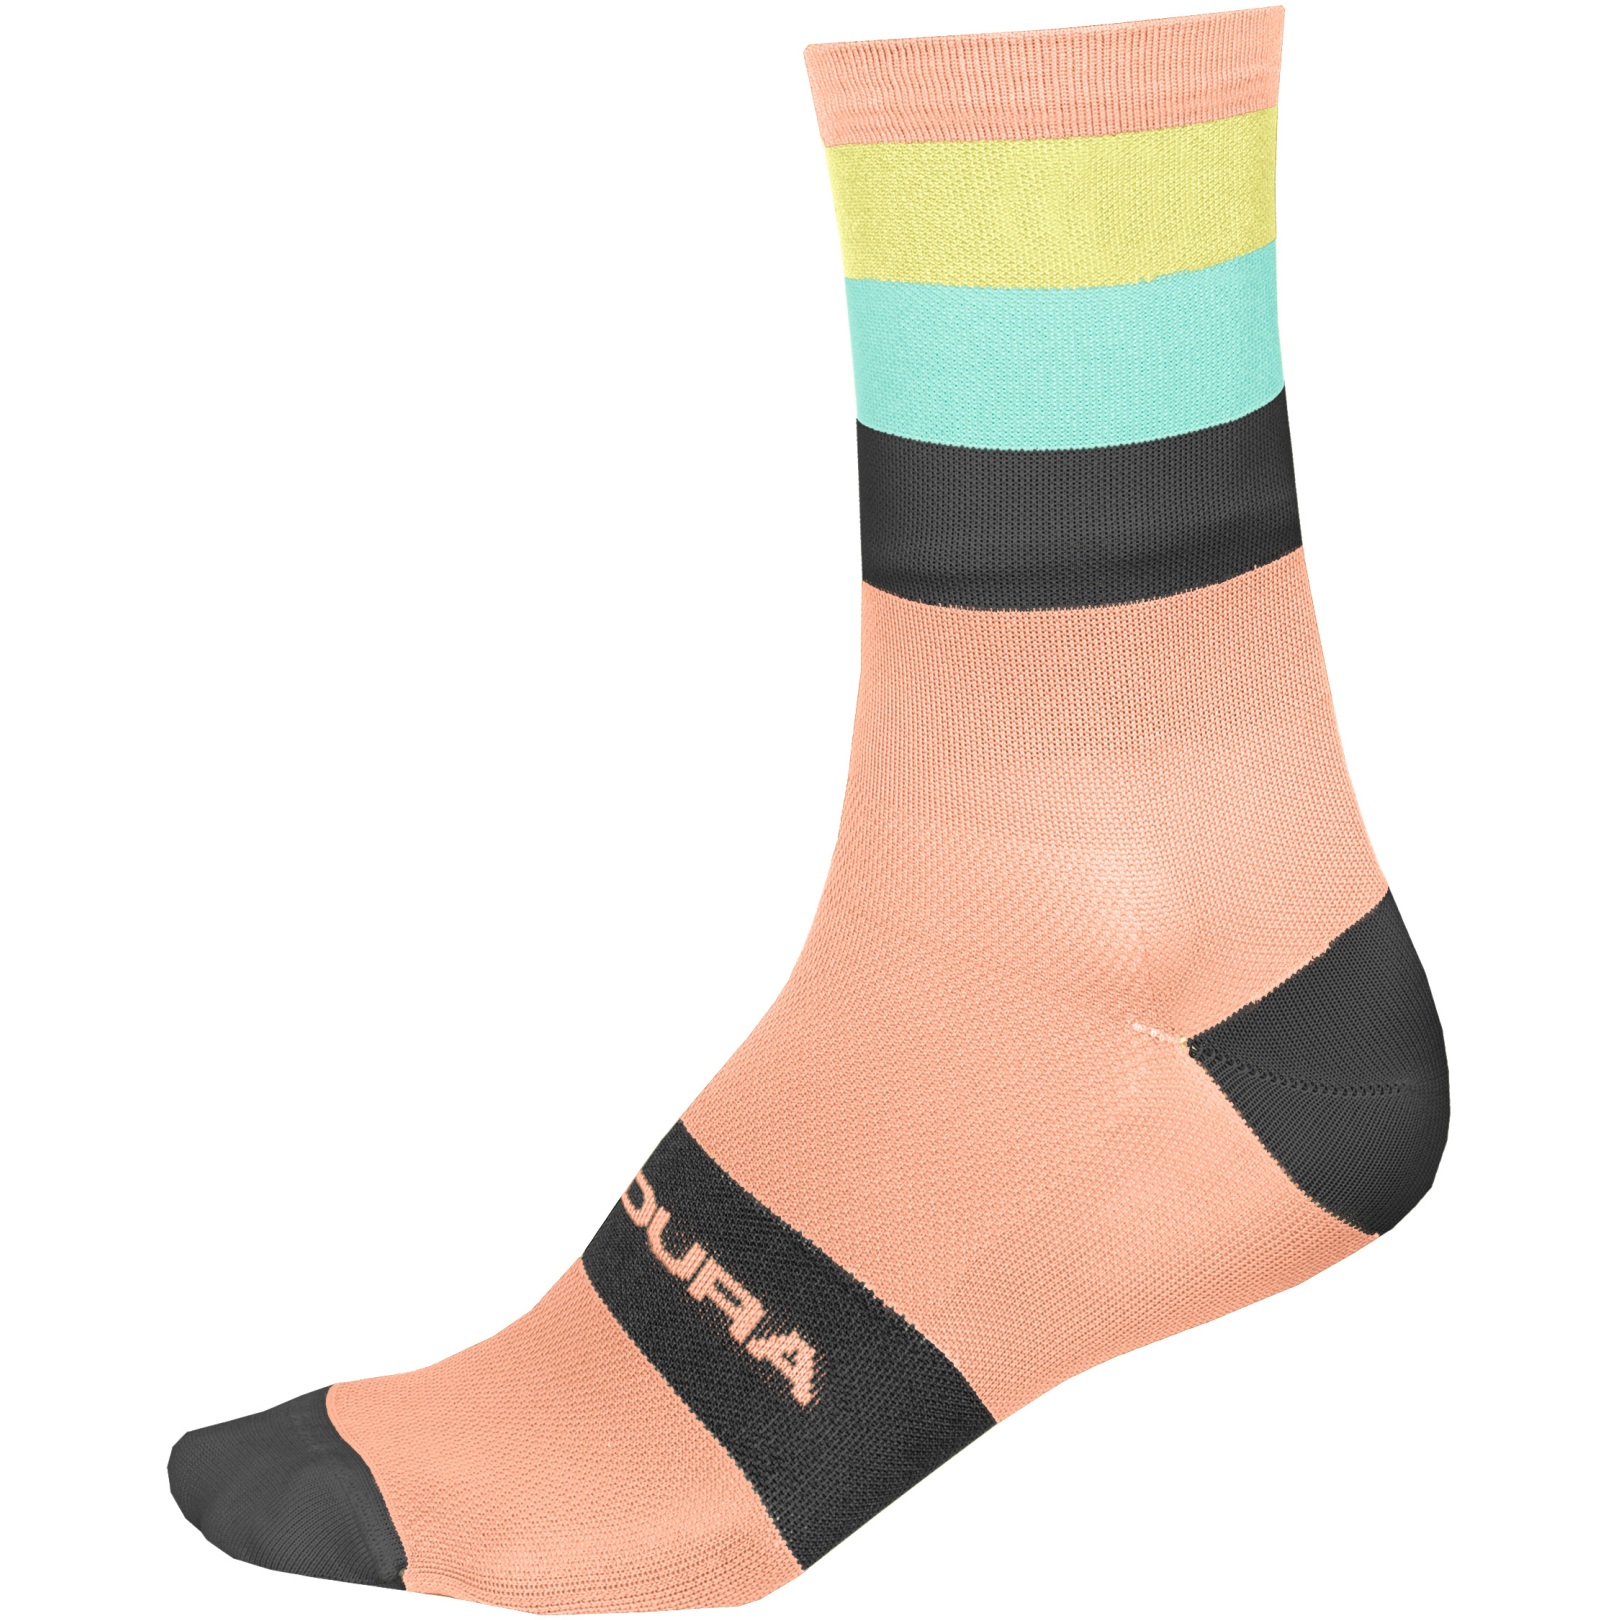 Produktbild von Endura Bandwidth Socken - neon peach